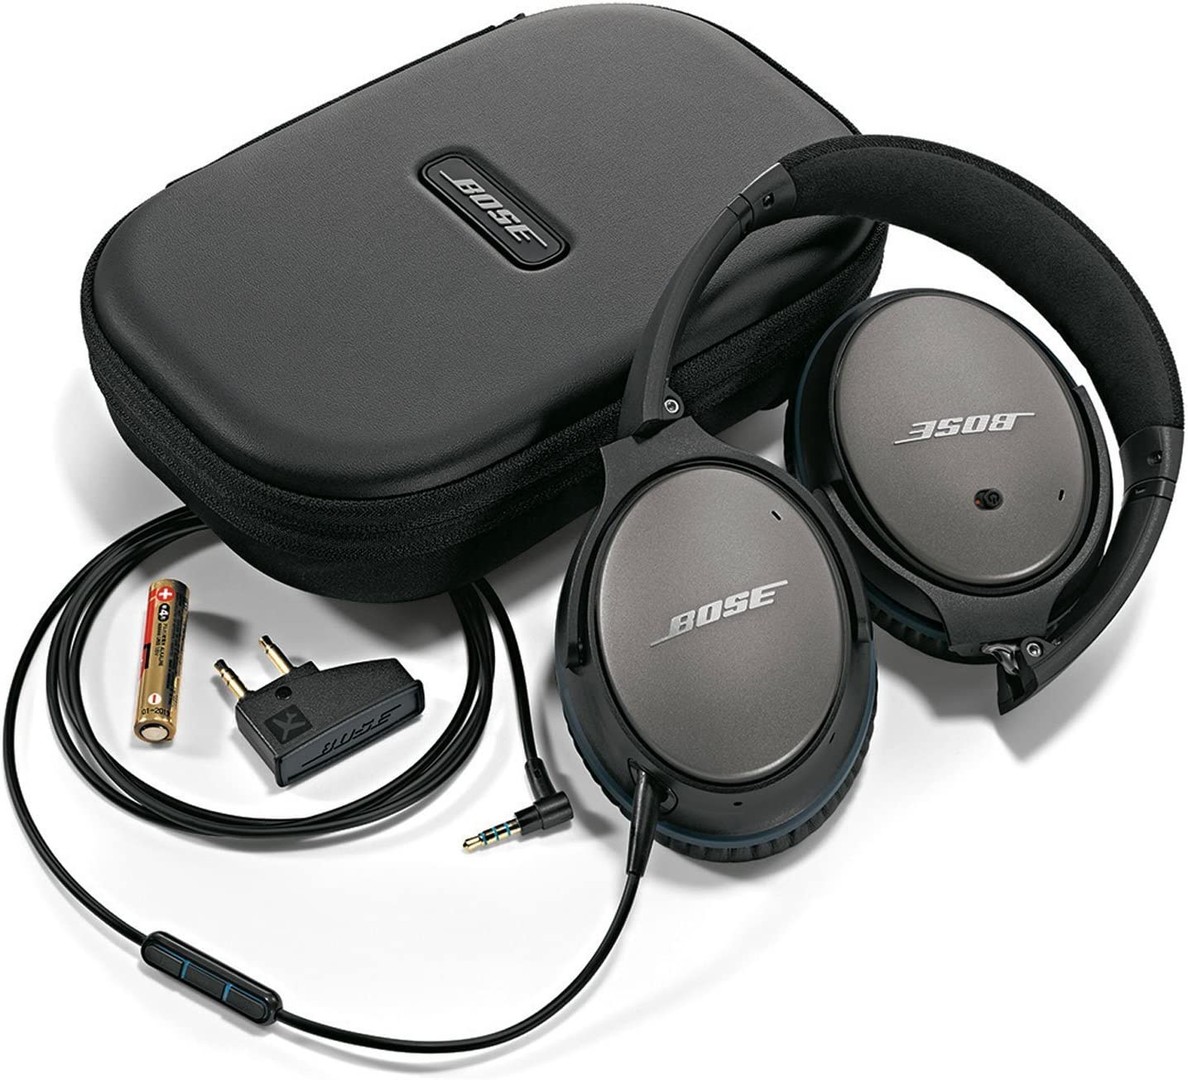 camaras y audio - audifonos bose quietcomfort 25 auriculares con cable (3.5) dispositivos apple 10